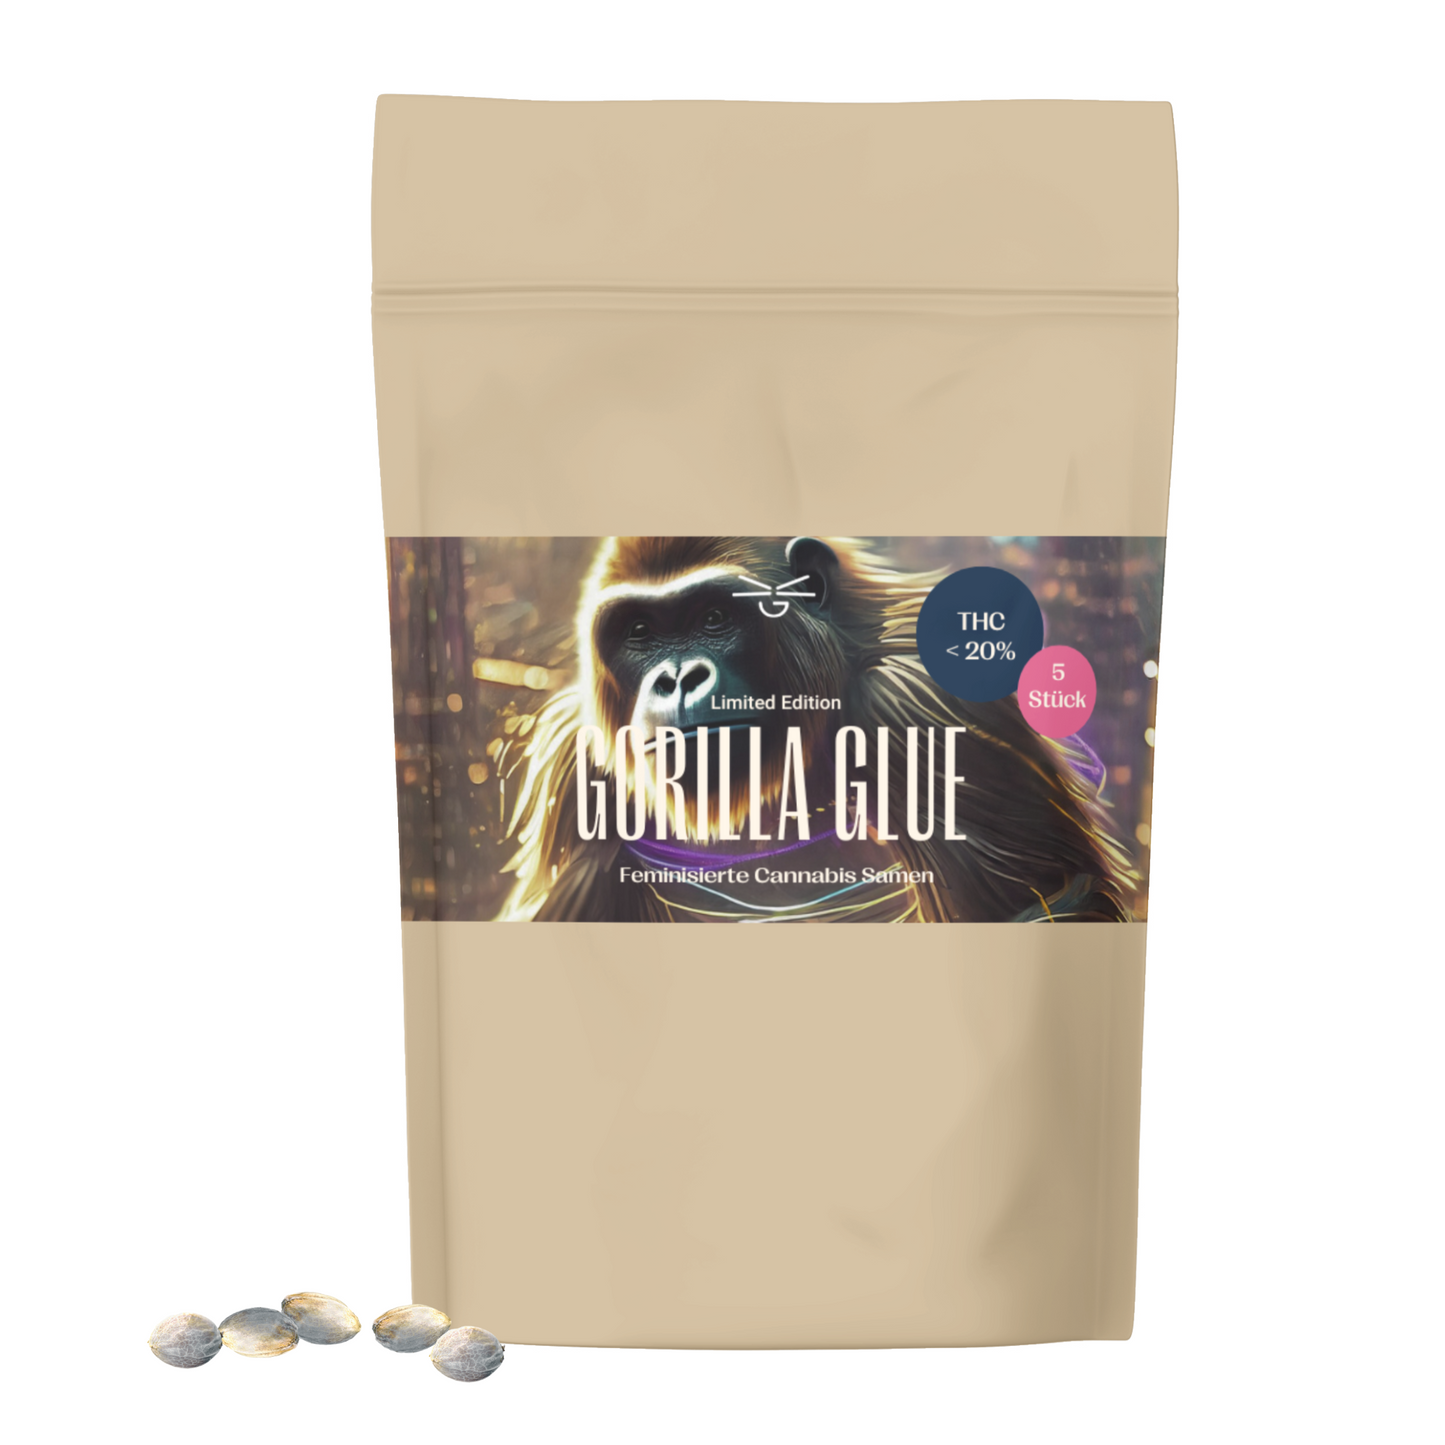 Gorilla Glue Cannabis Samen (feminisiert)